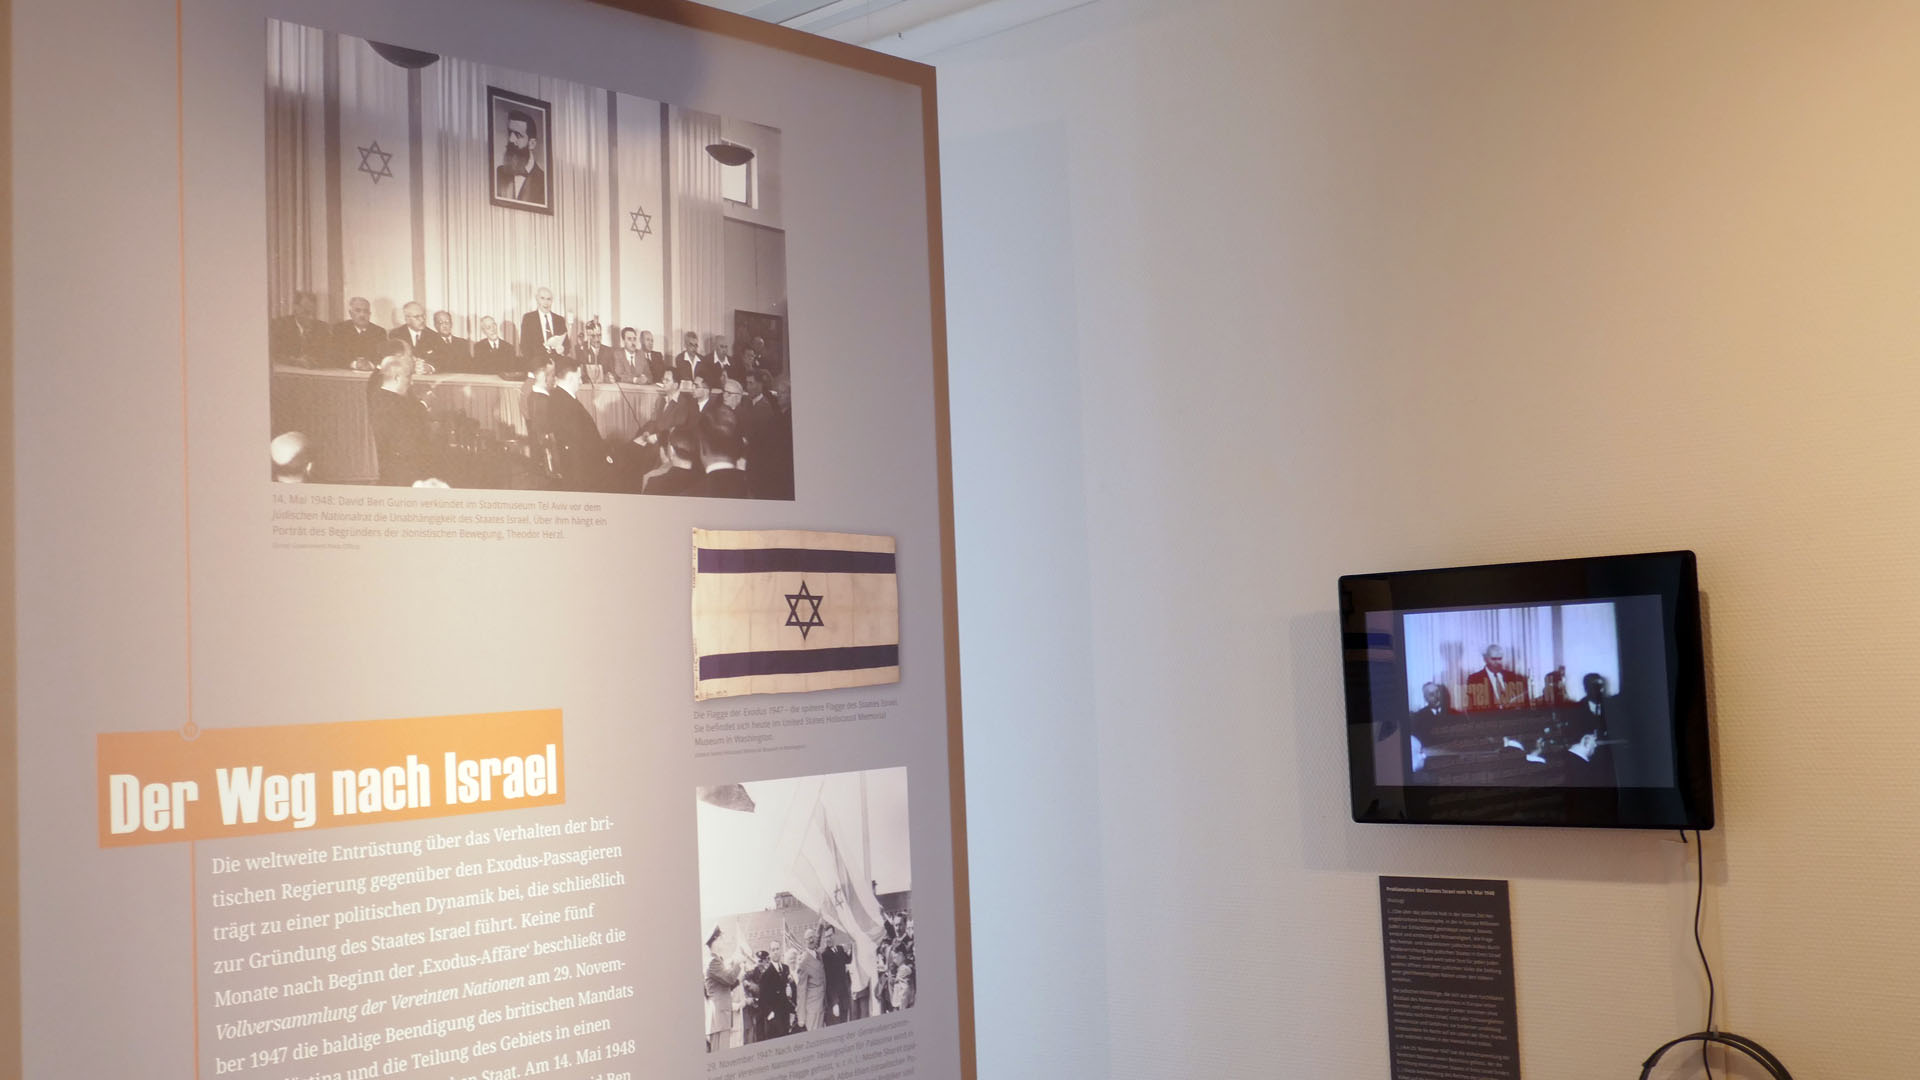 Auch die Verlesung der israelischen Unabhängigkeitserklärung wird dokumentiert